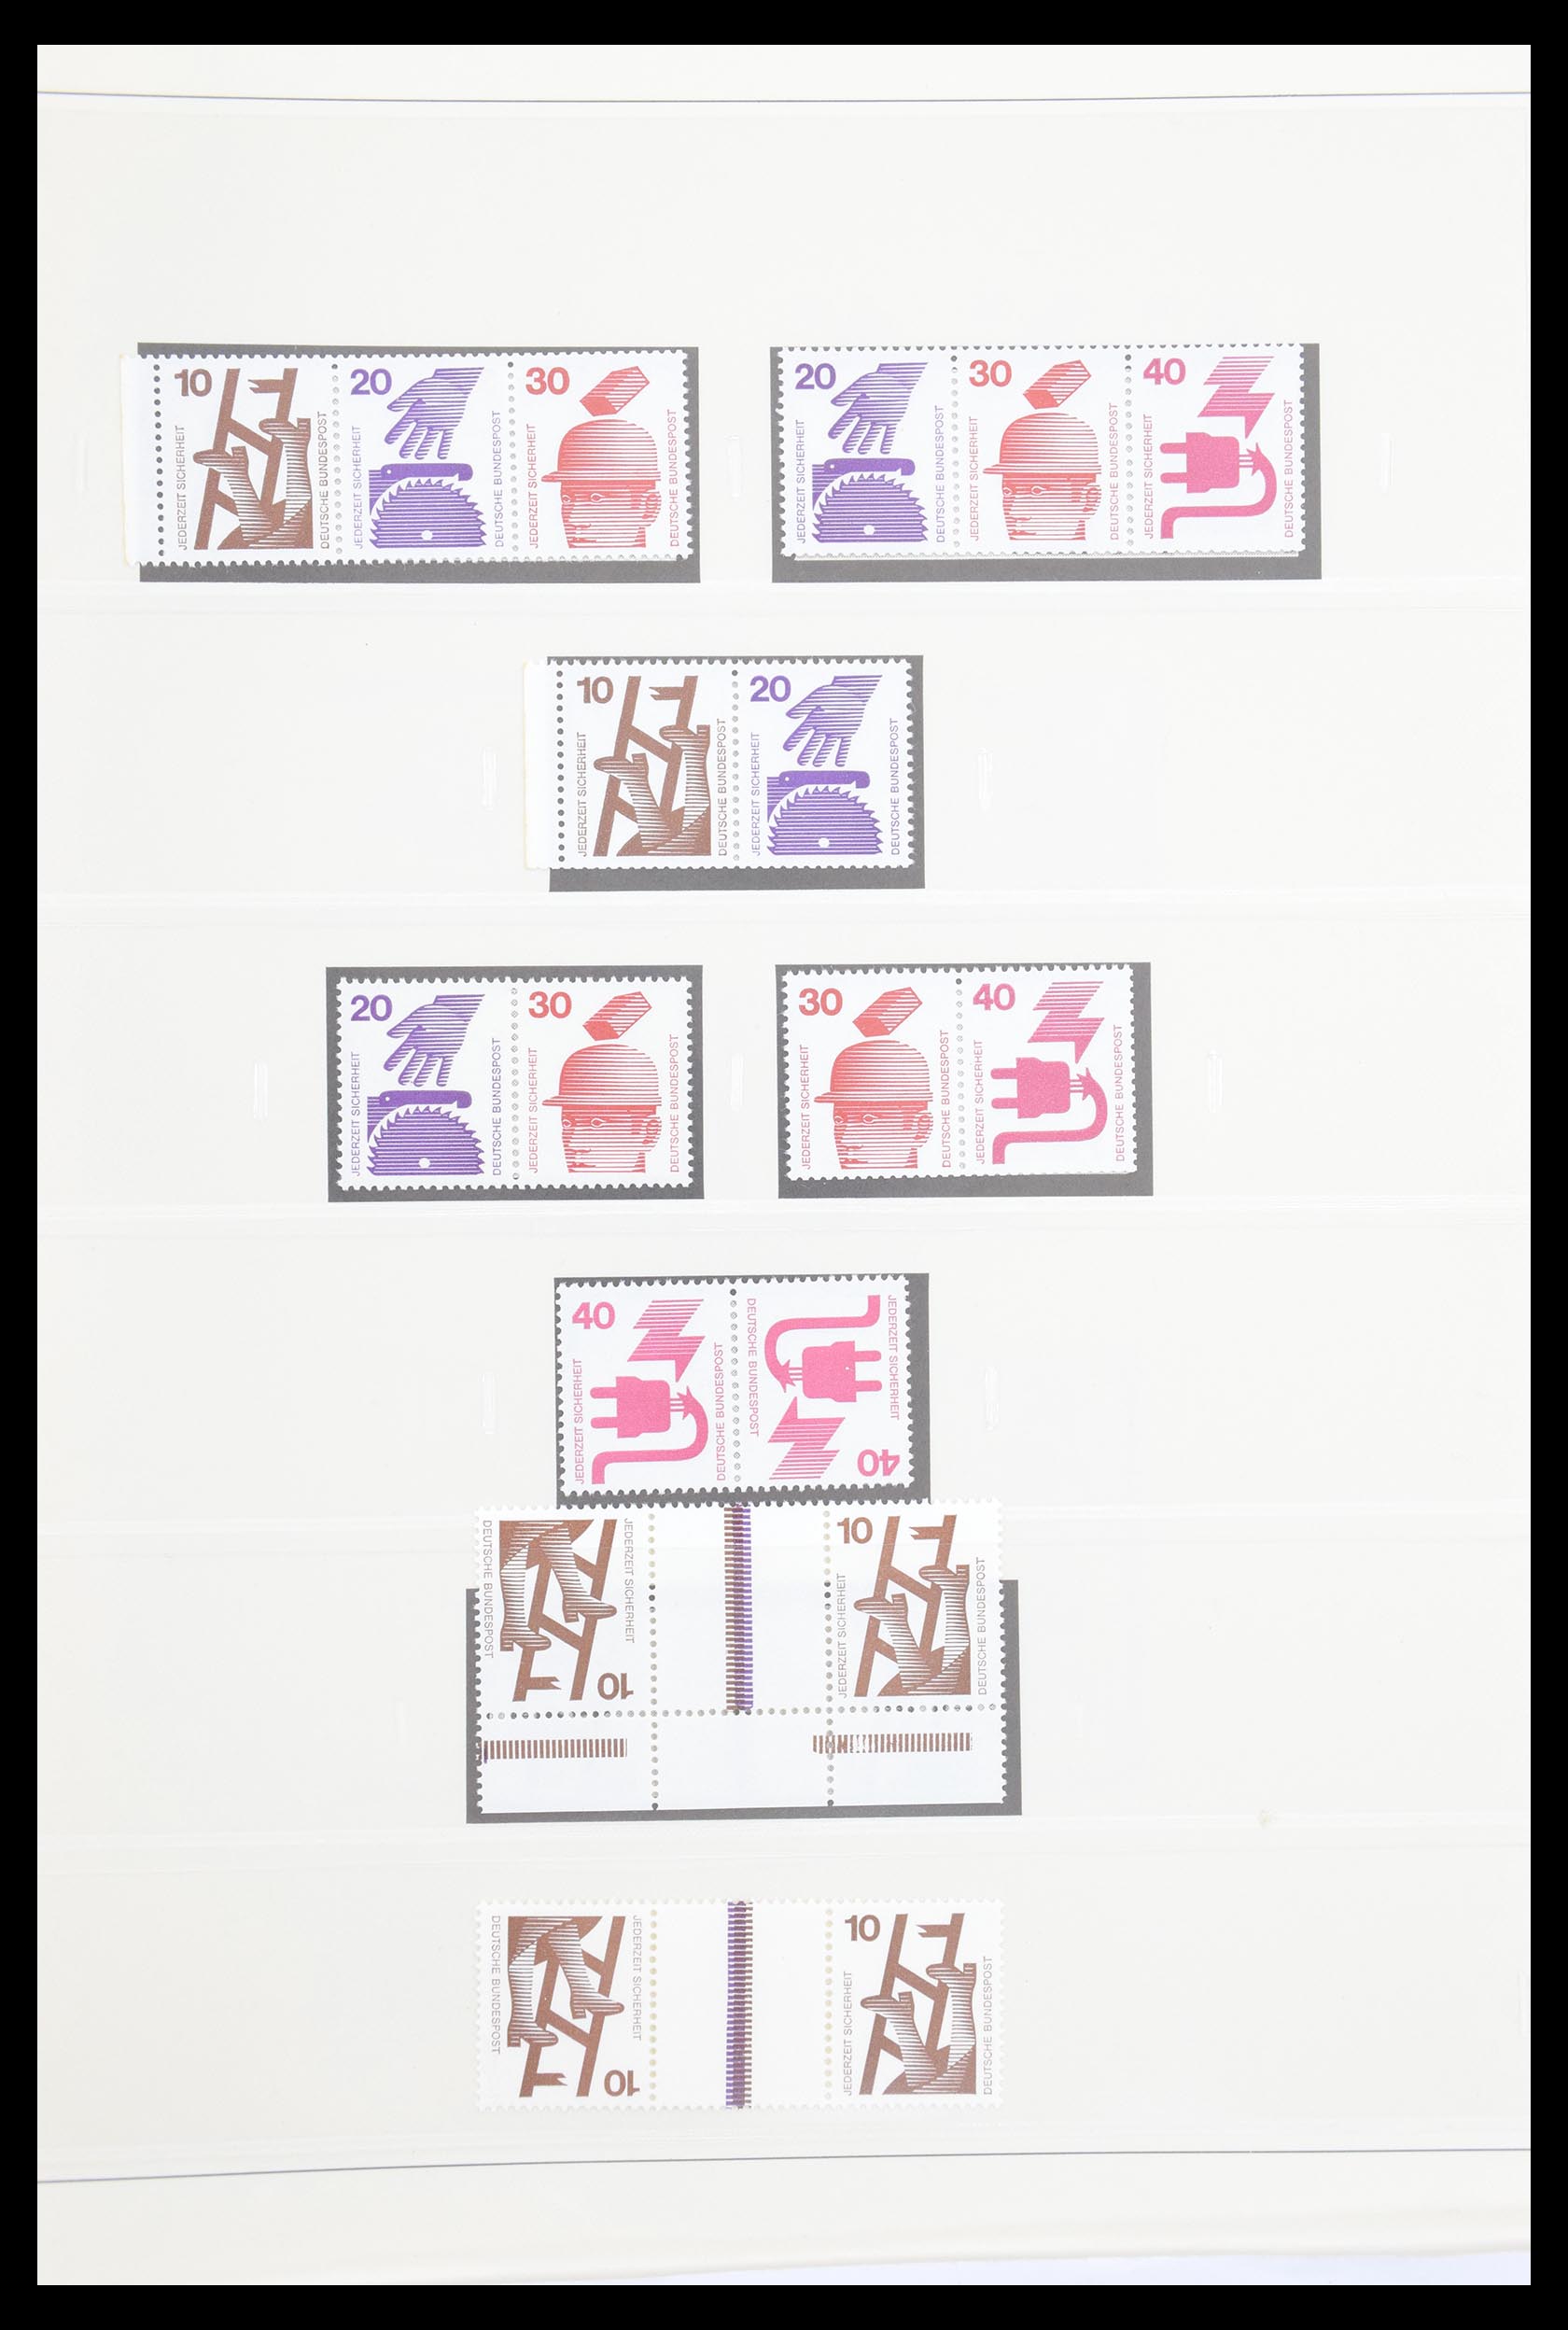 30605 037 - 30605 Bundespost combinaties 1951-1974.